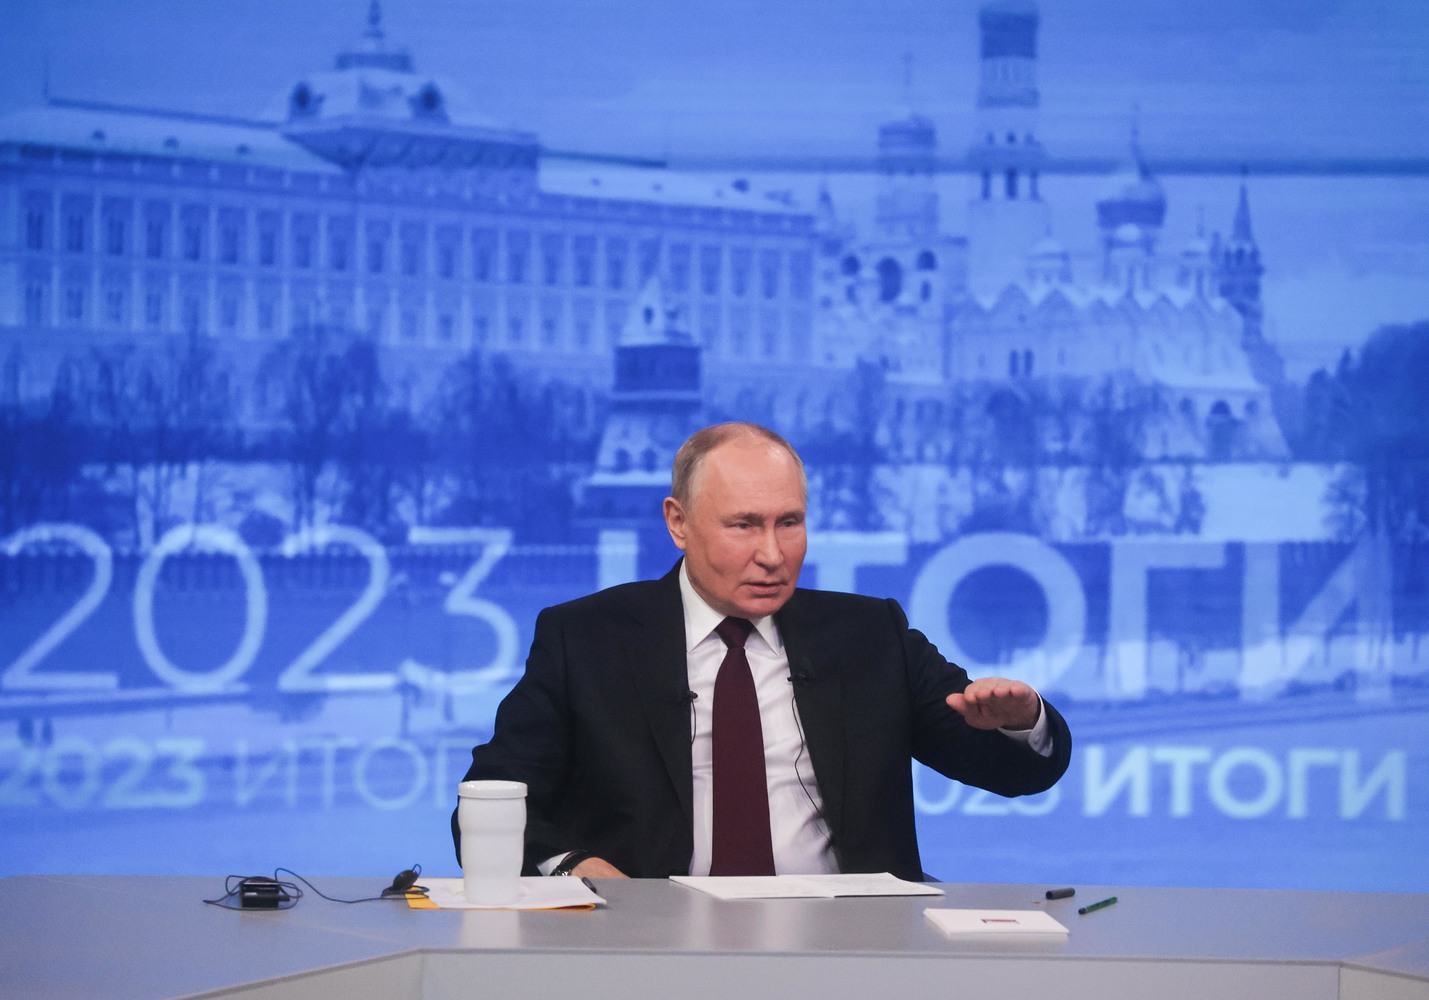 Яйца, нейродвойник, томик Лермонтова: эмоциональные кадры итоговой пресс-конференции Путина